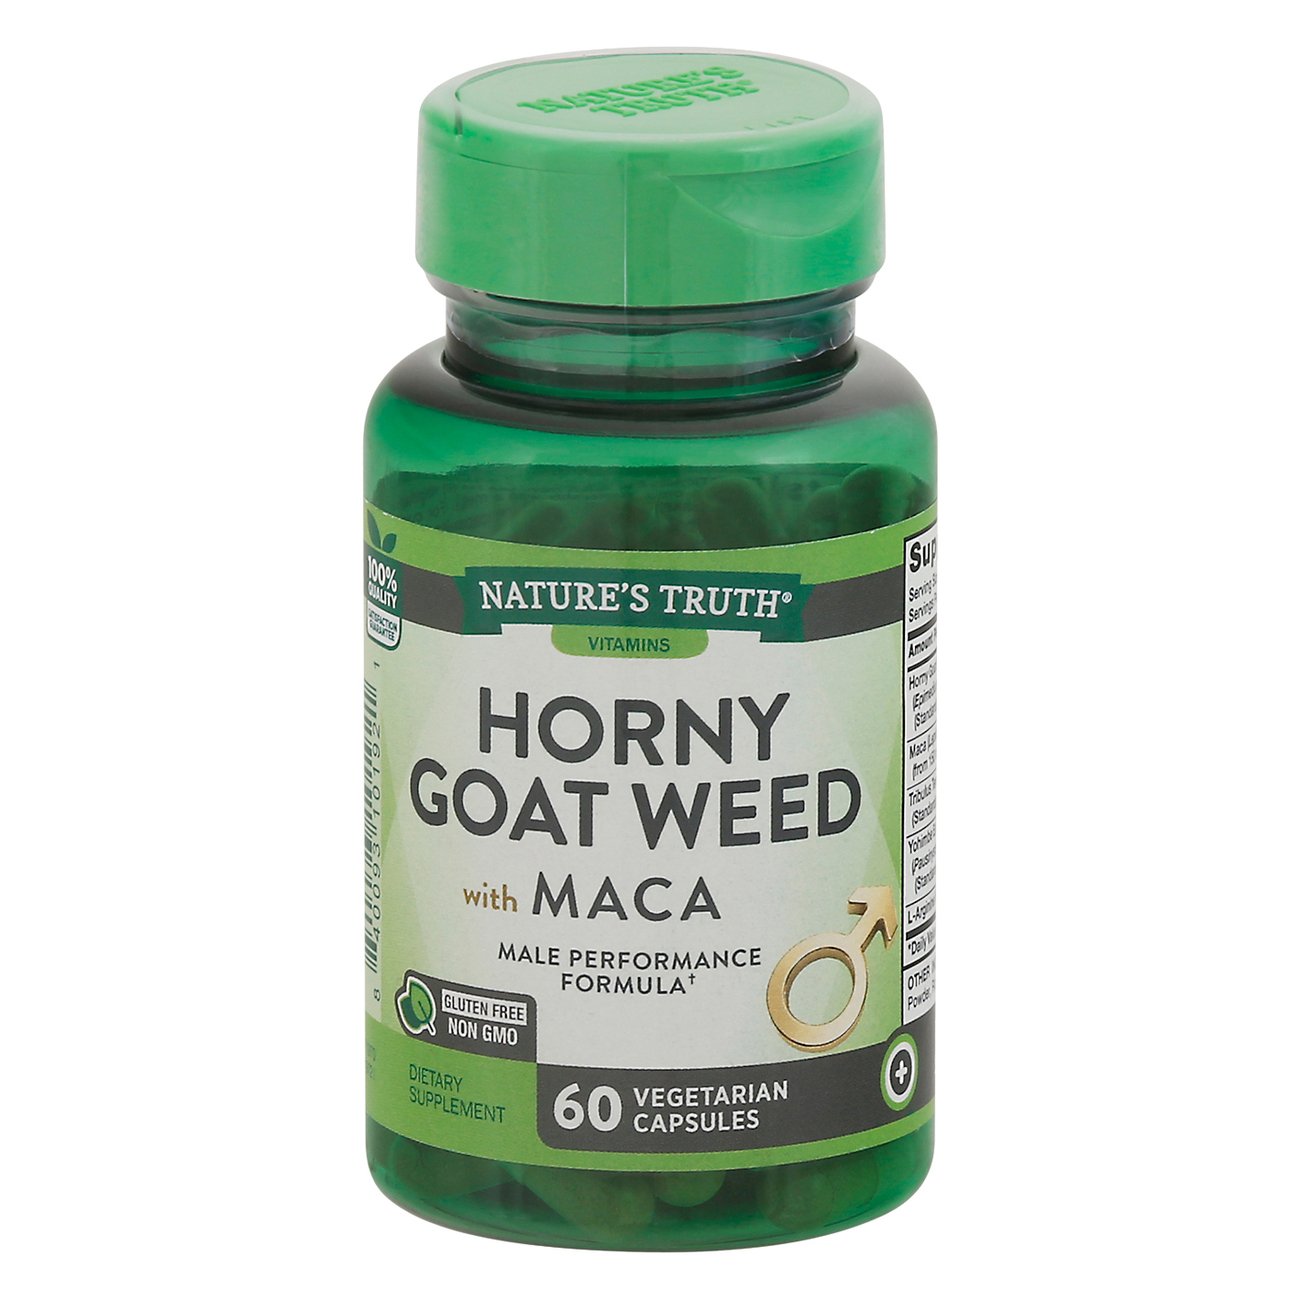 Yohimbe vs horny goat weed